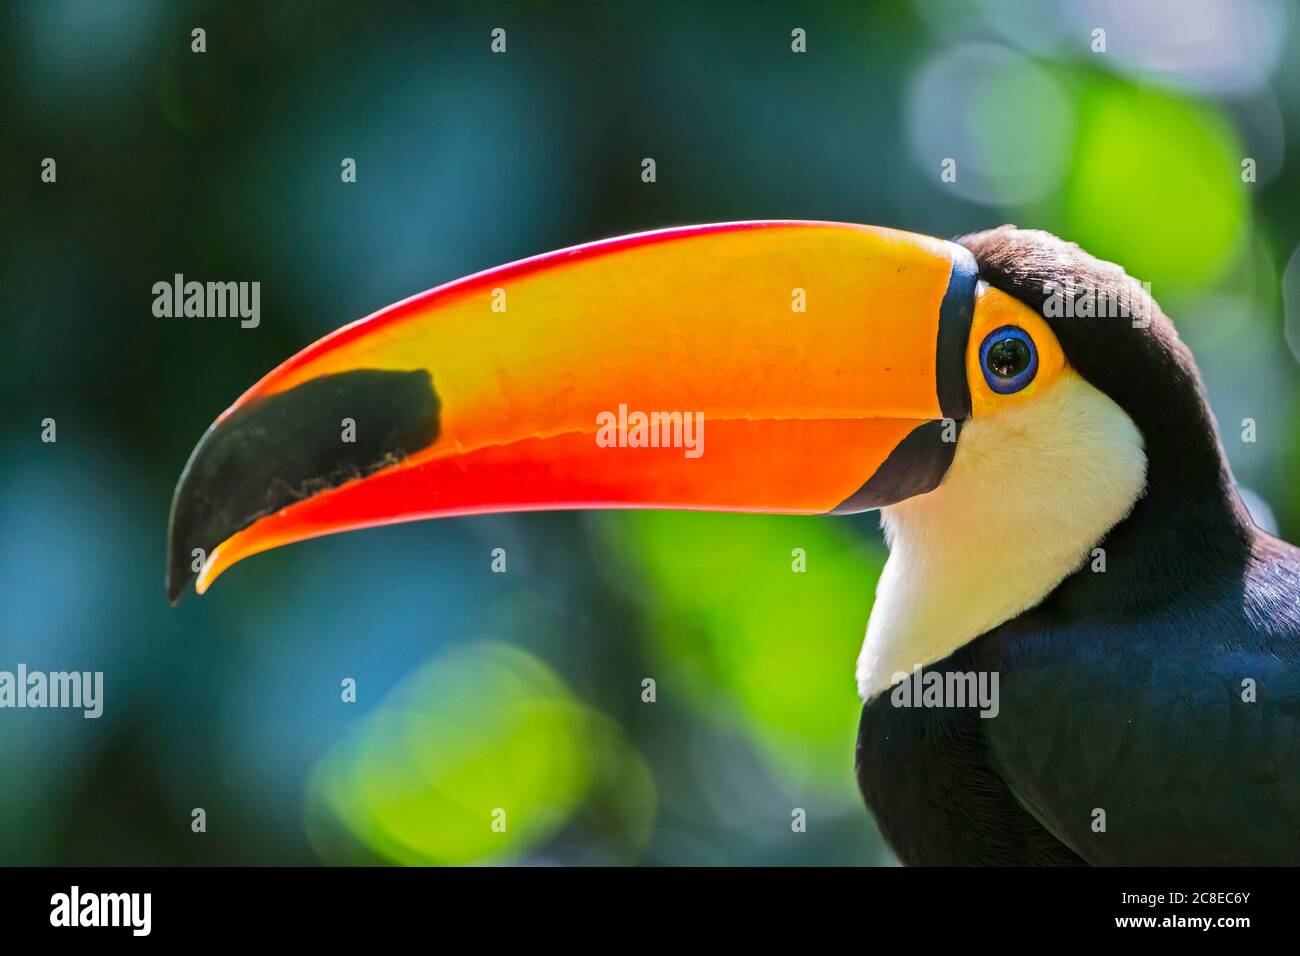 Brazil, Mato Grosso, Mato grosso do Sul, portrait of common toucan, Ramphastos toco Stock Photo